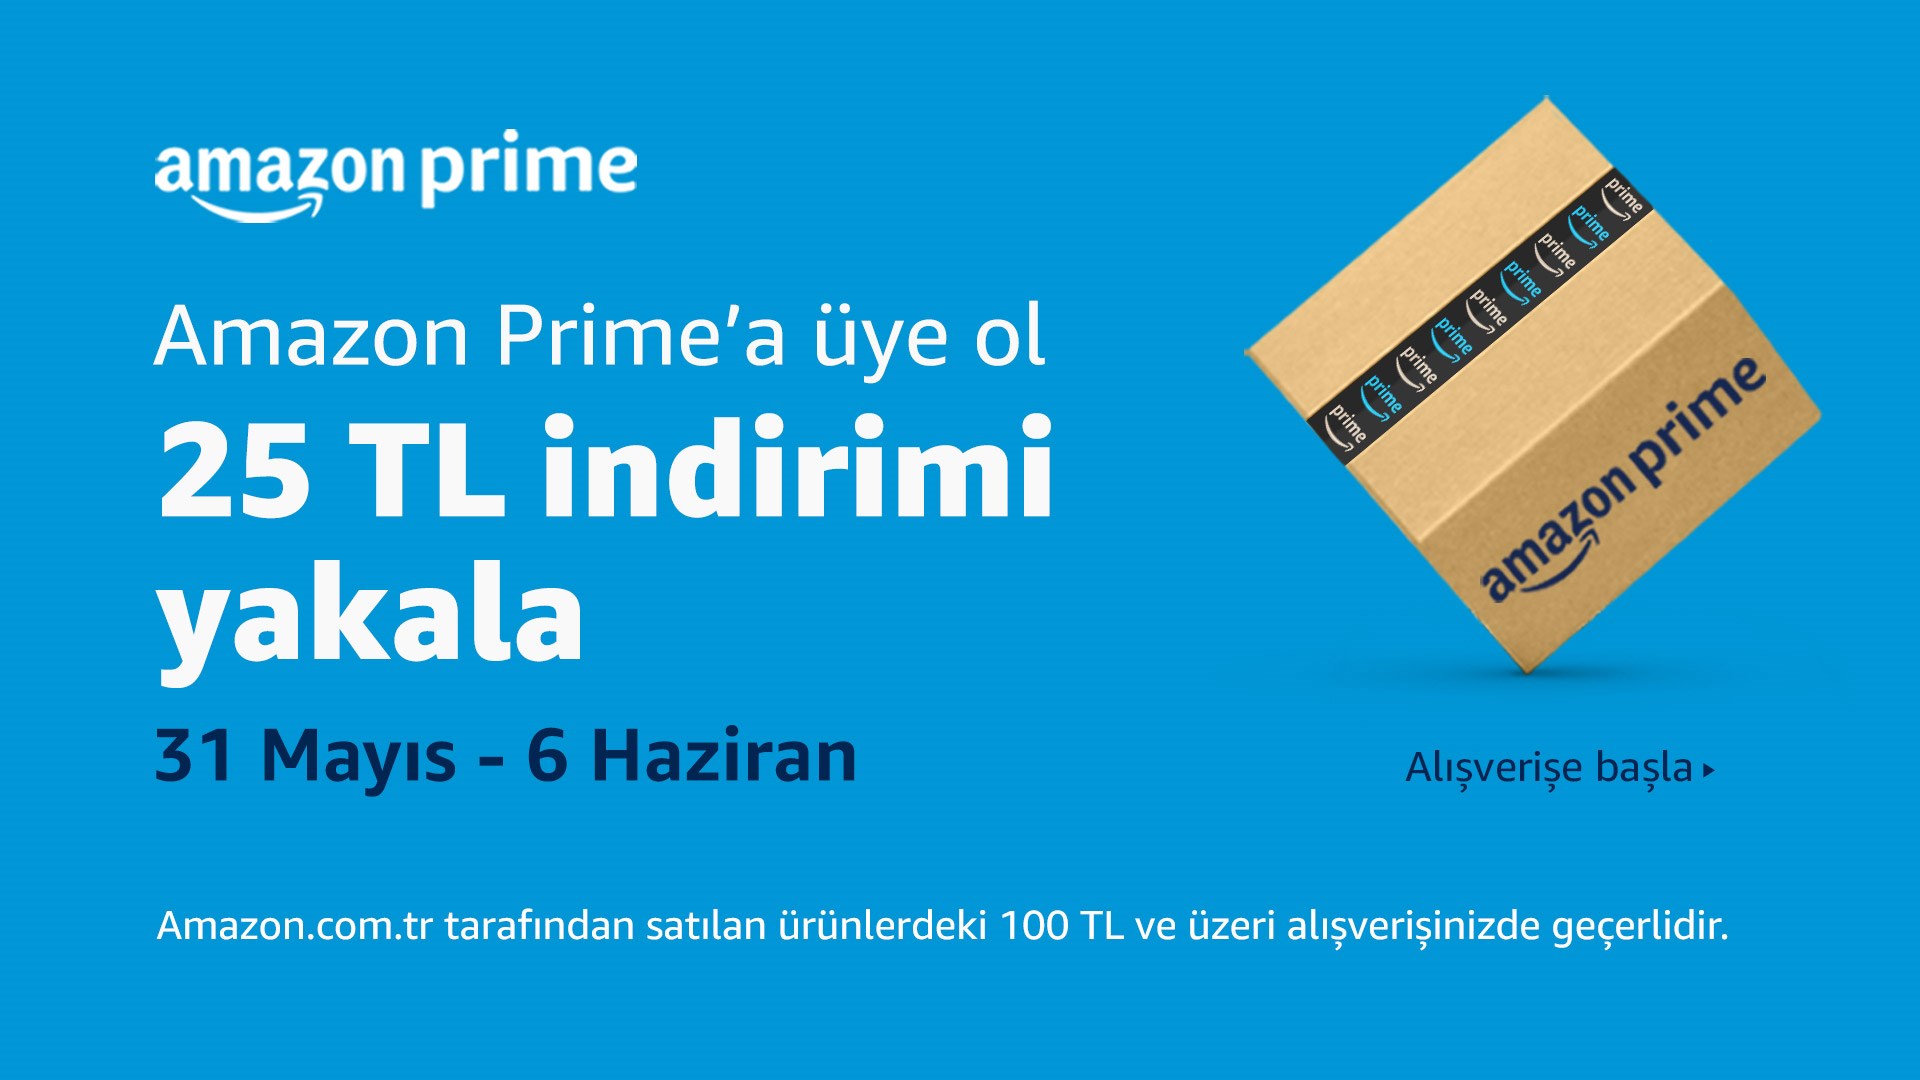 Amazon Prime’a yeni üye olan DH'lilere özel 25 TL indirim kodu